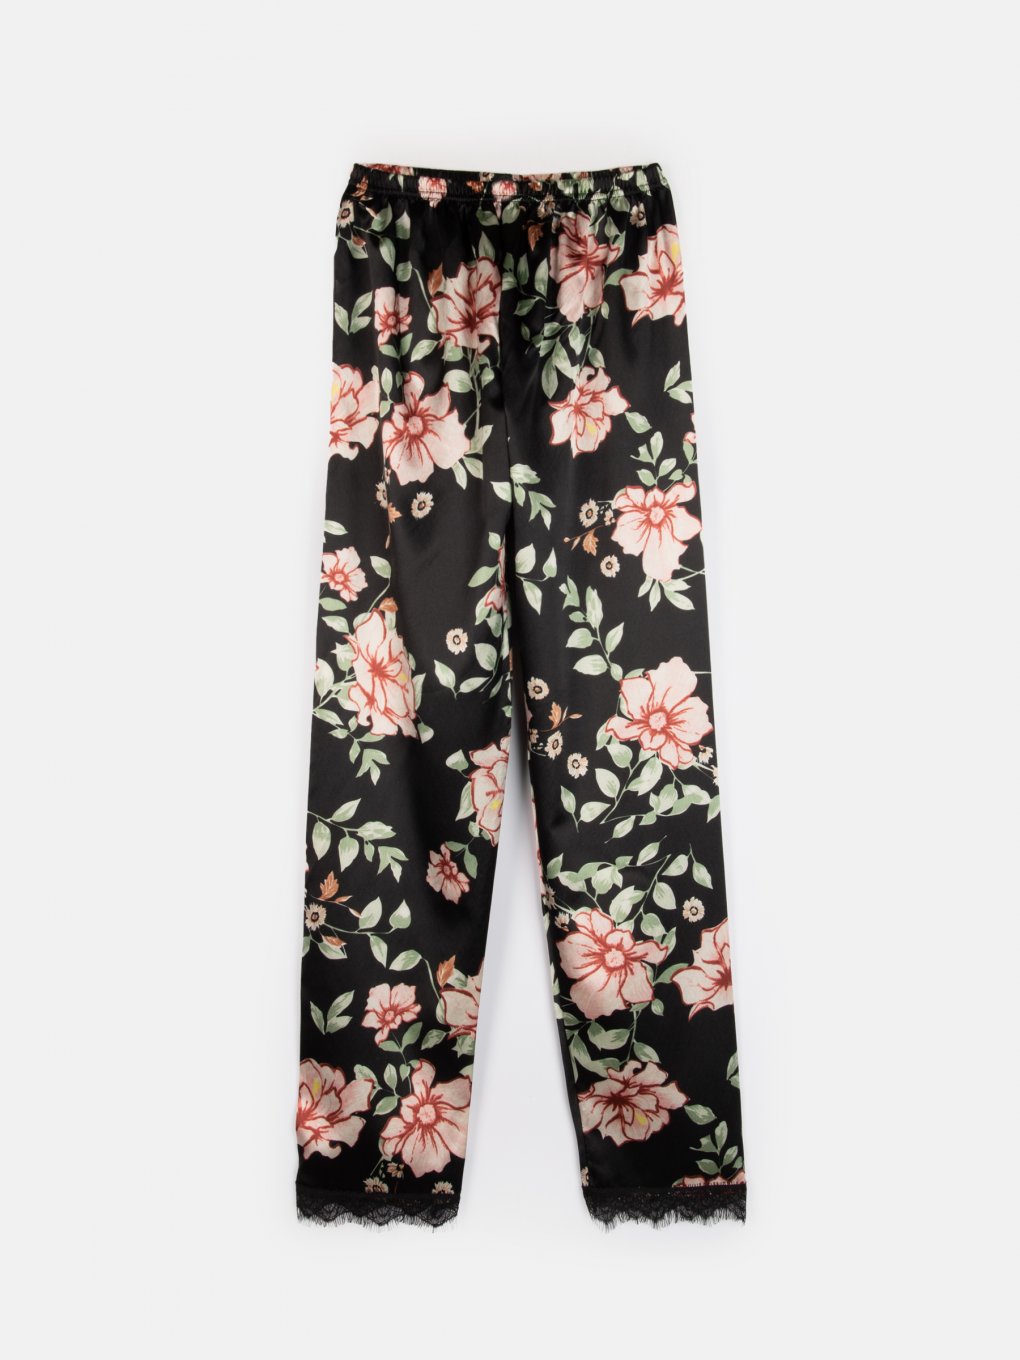 Kvetované saténové dámske pyžamvé nohavice